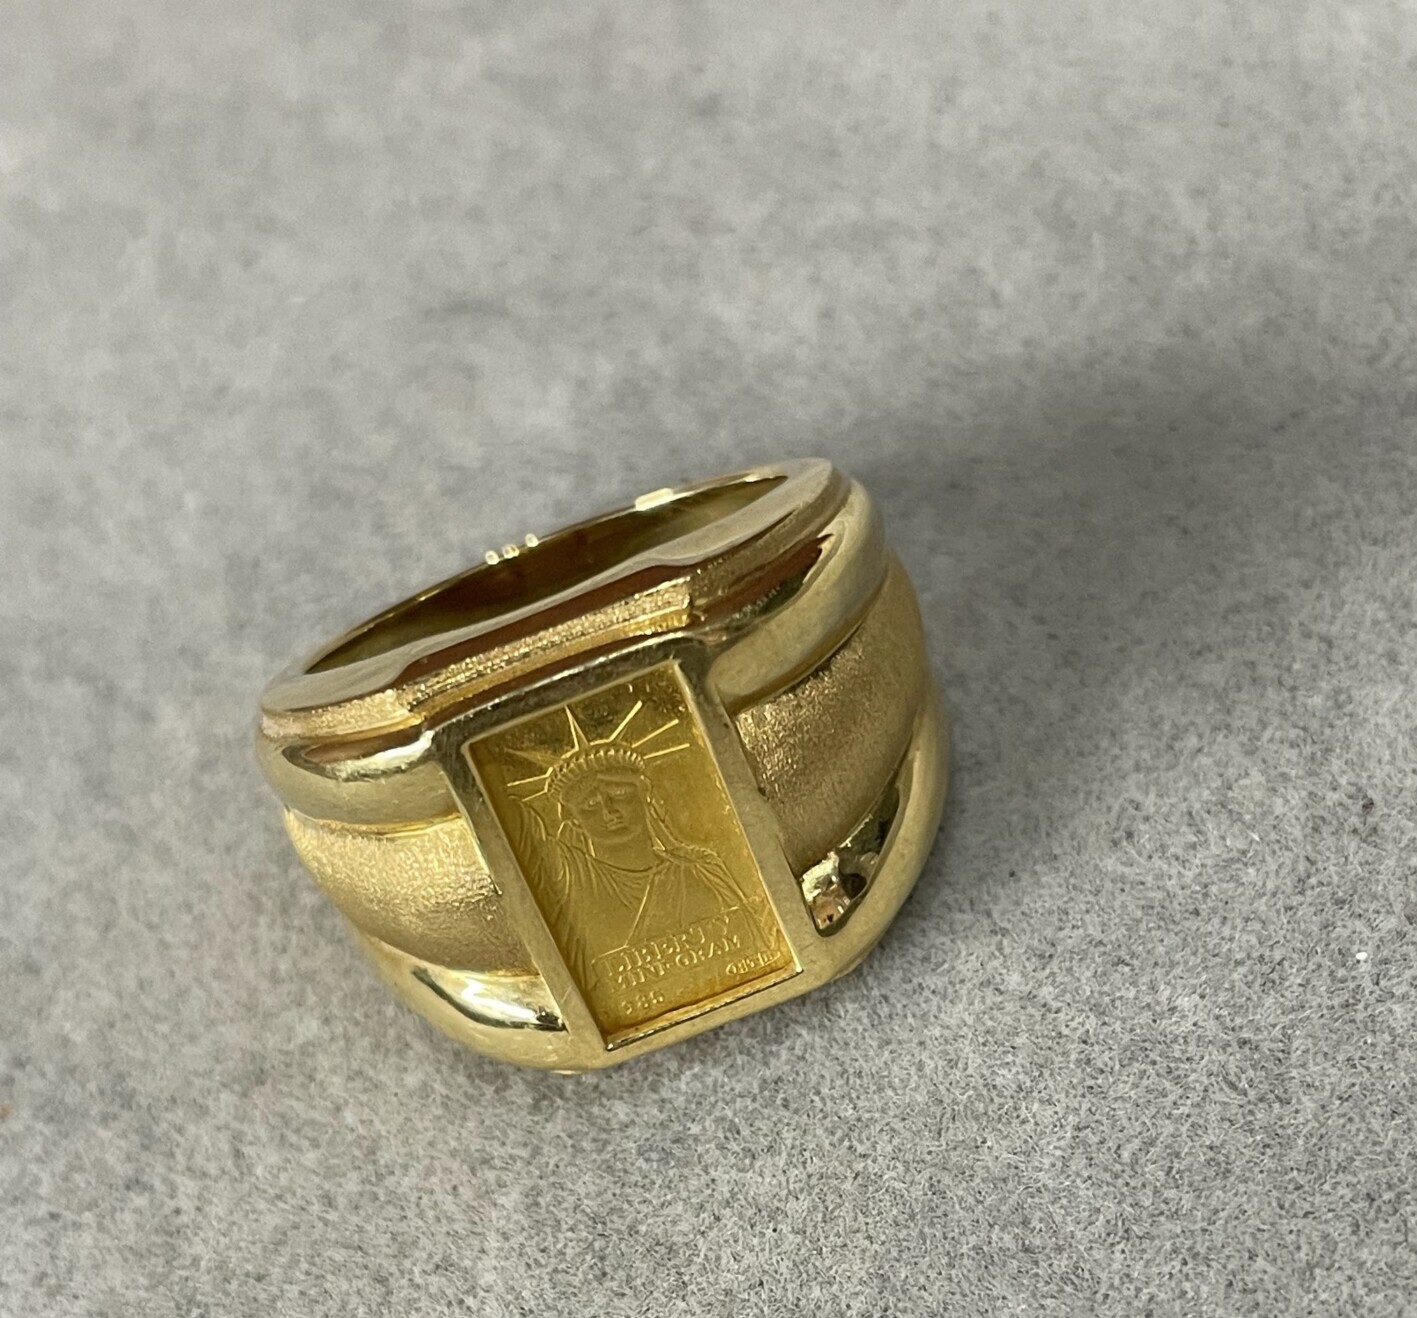 gold ring with swiss bank ingot